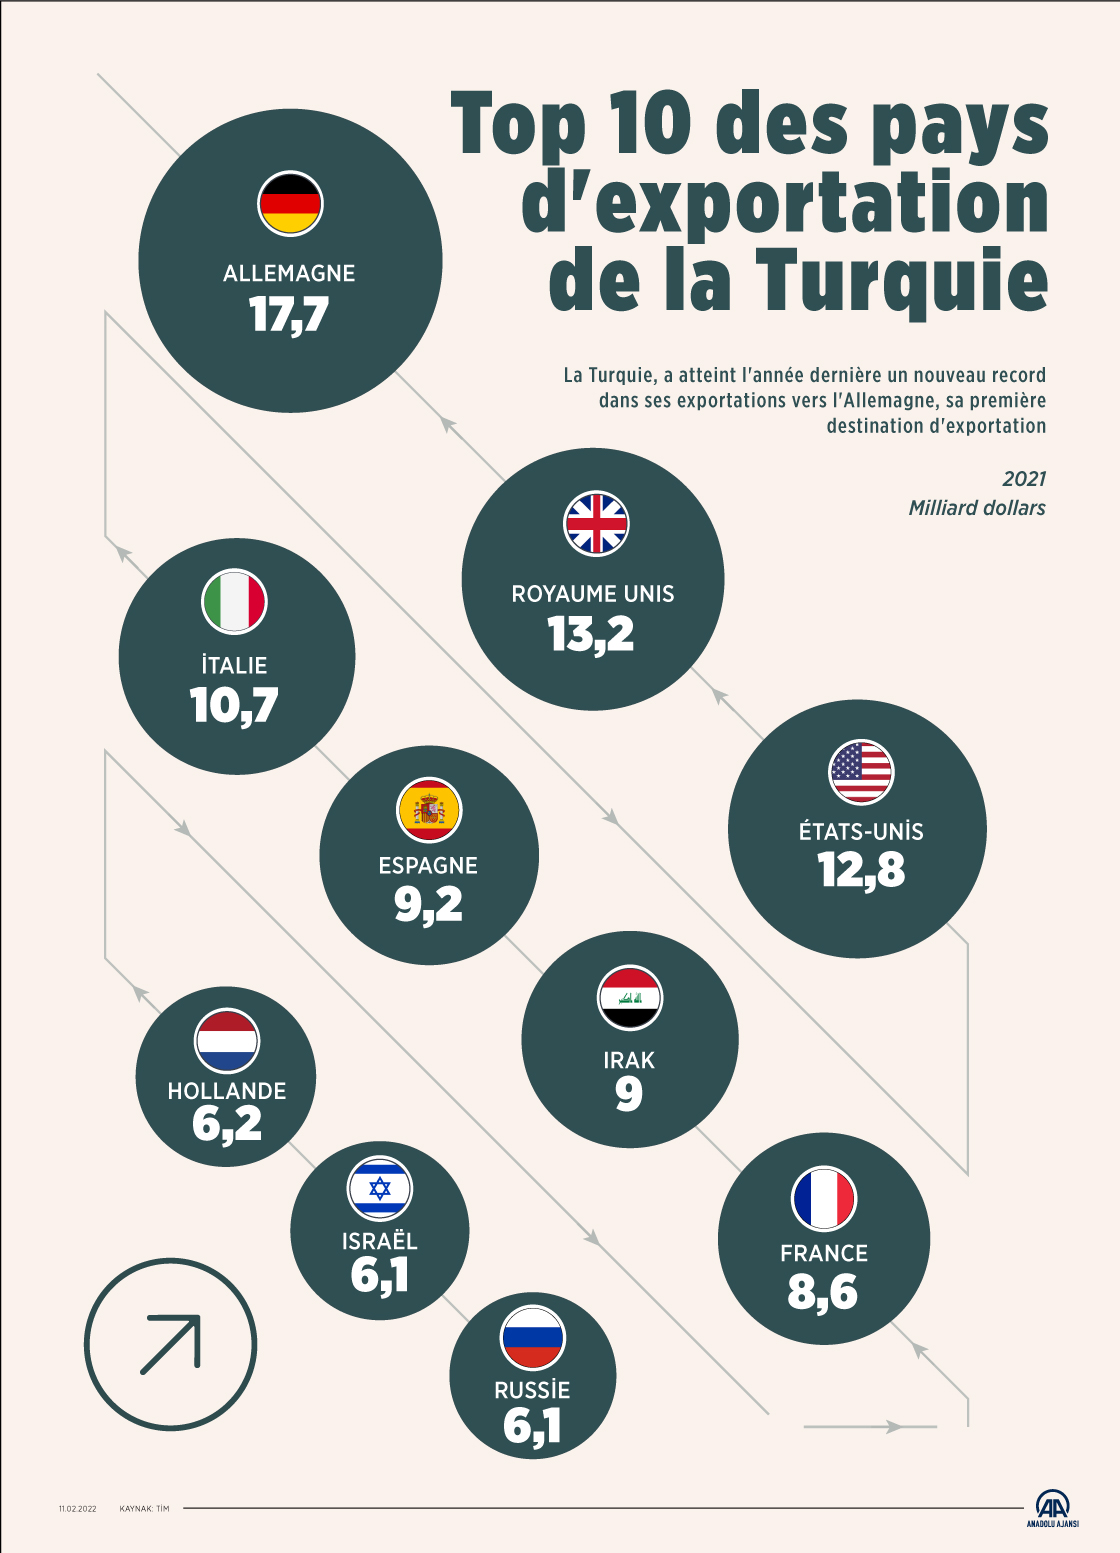 Top 10 des pays d'exportation de la Turquie 